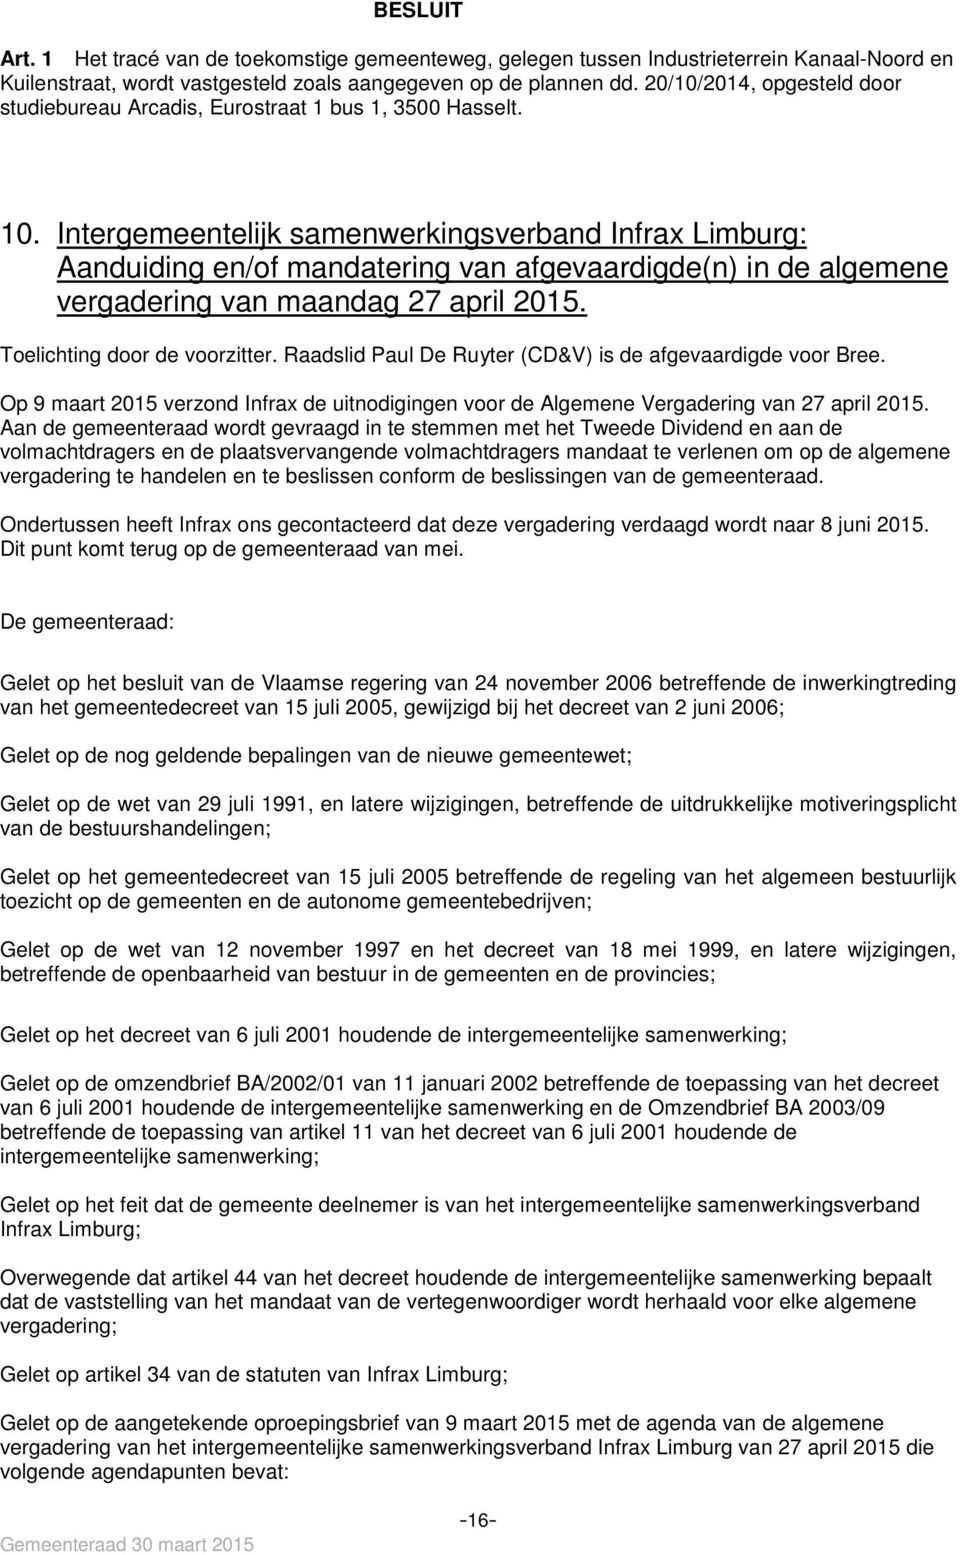 Intergemeentelijk samenwerkingsverband Infrax Limburg: Aanduiding en/of mandatering van afgevaardigde(n) in de algemene vergadering van maandag 27 april 2015. Toelichting door de voorzitter.